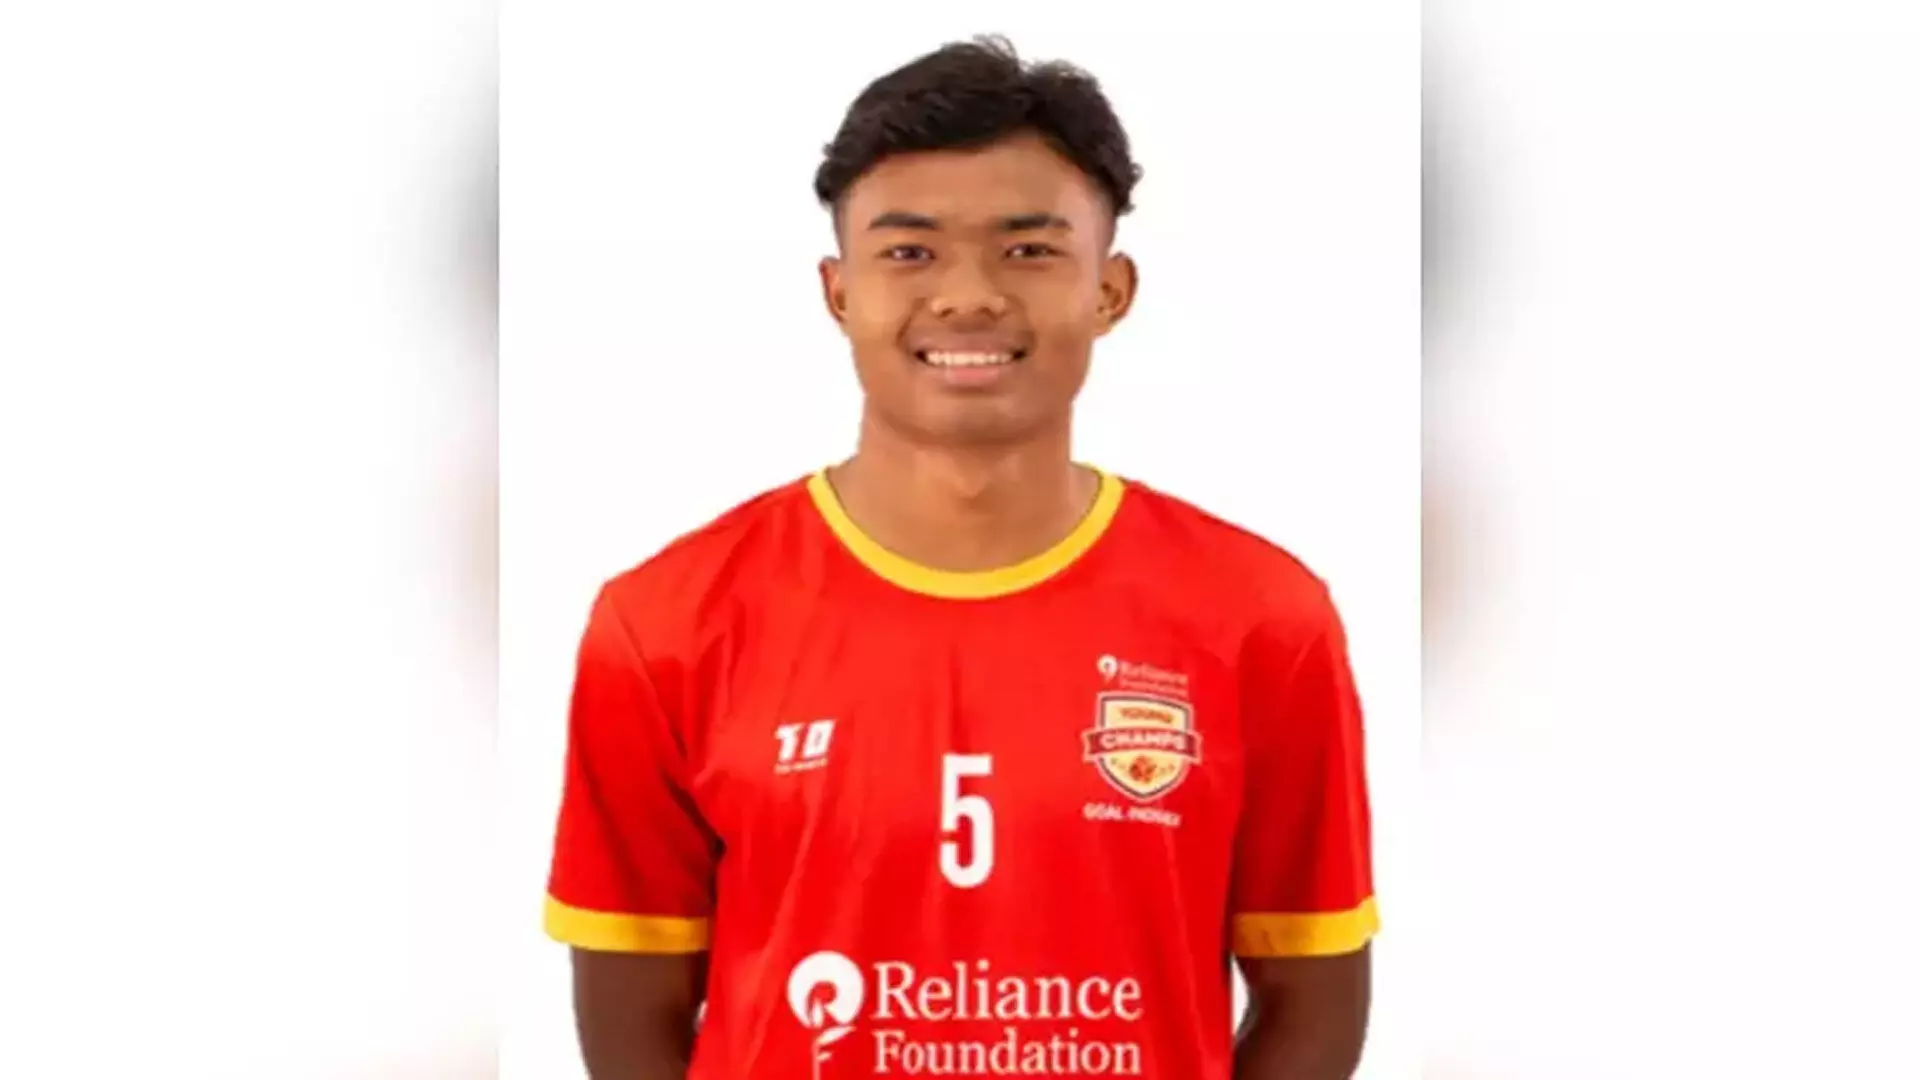 FC गोवा ने युवा फुल-बैक सनतोम्बा सिंह यांगलेम के साथ बहु-वर्षीय अनुबंध पर हस्ताक्षर किया